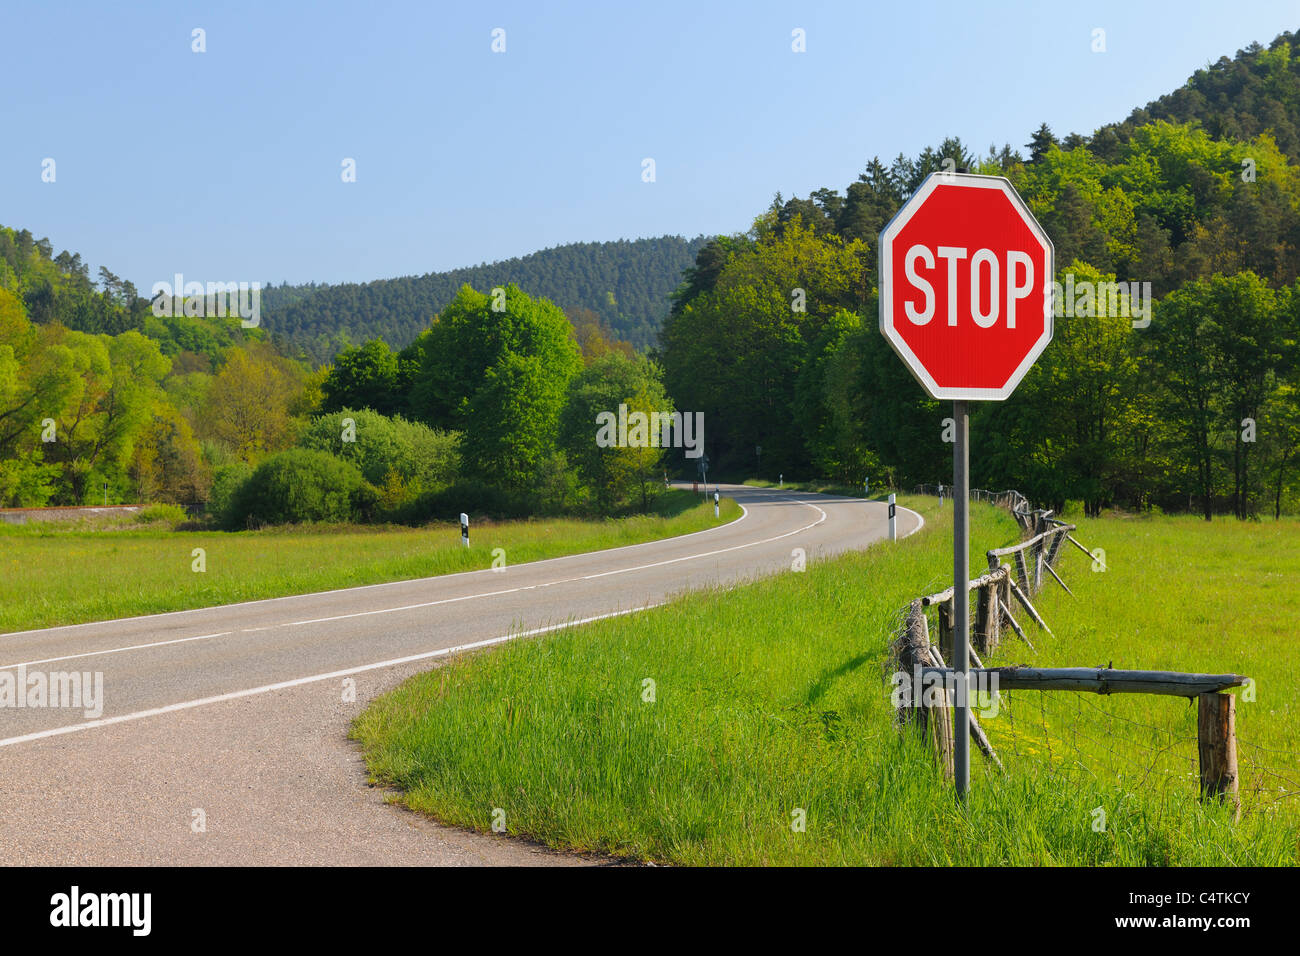 Stop Sign on Road, Pfalzerwald, Rhineland-Palatinate, Germany Stock Photo